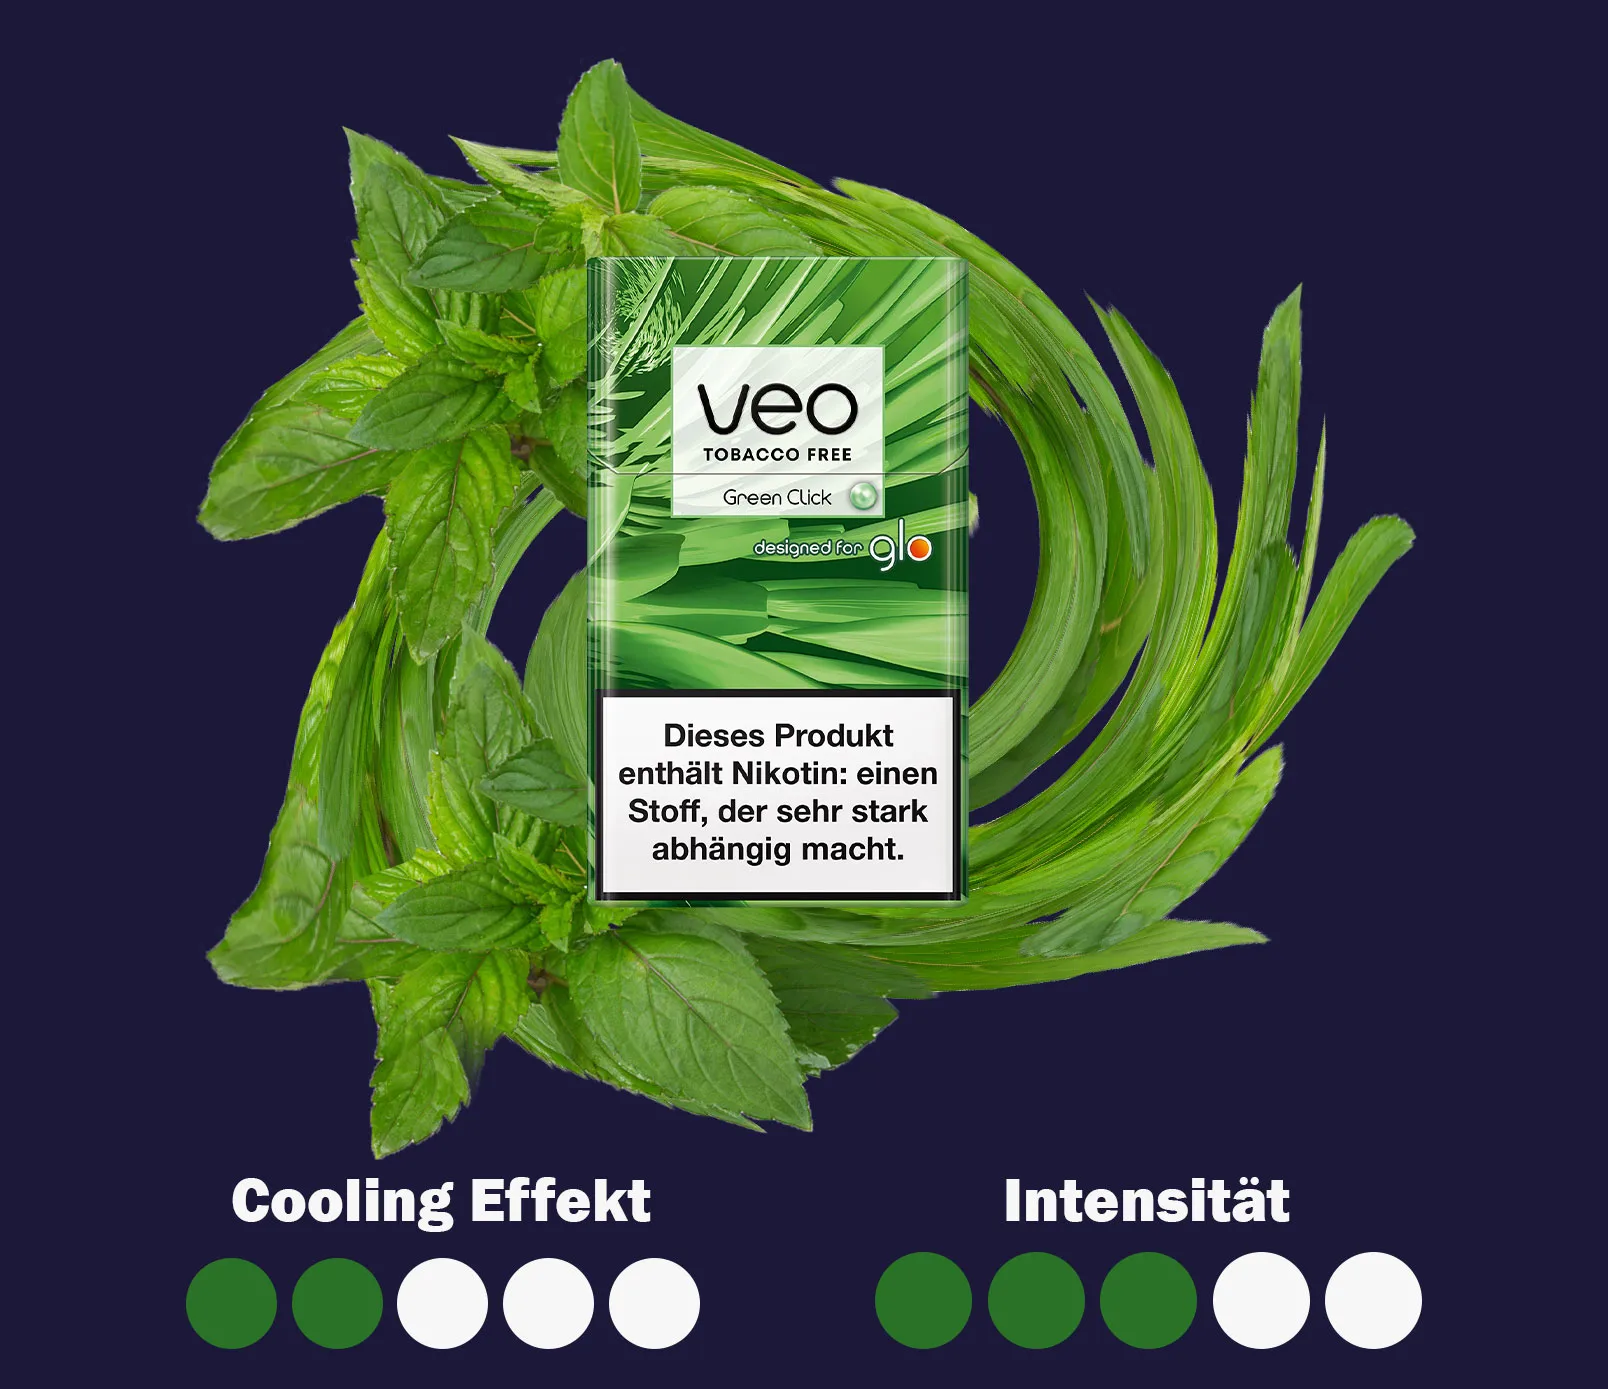 Eine Intensitaetsuebersicht zu den Veo sticks Green Click